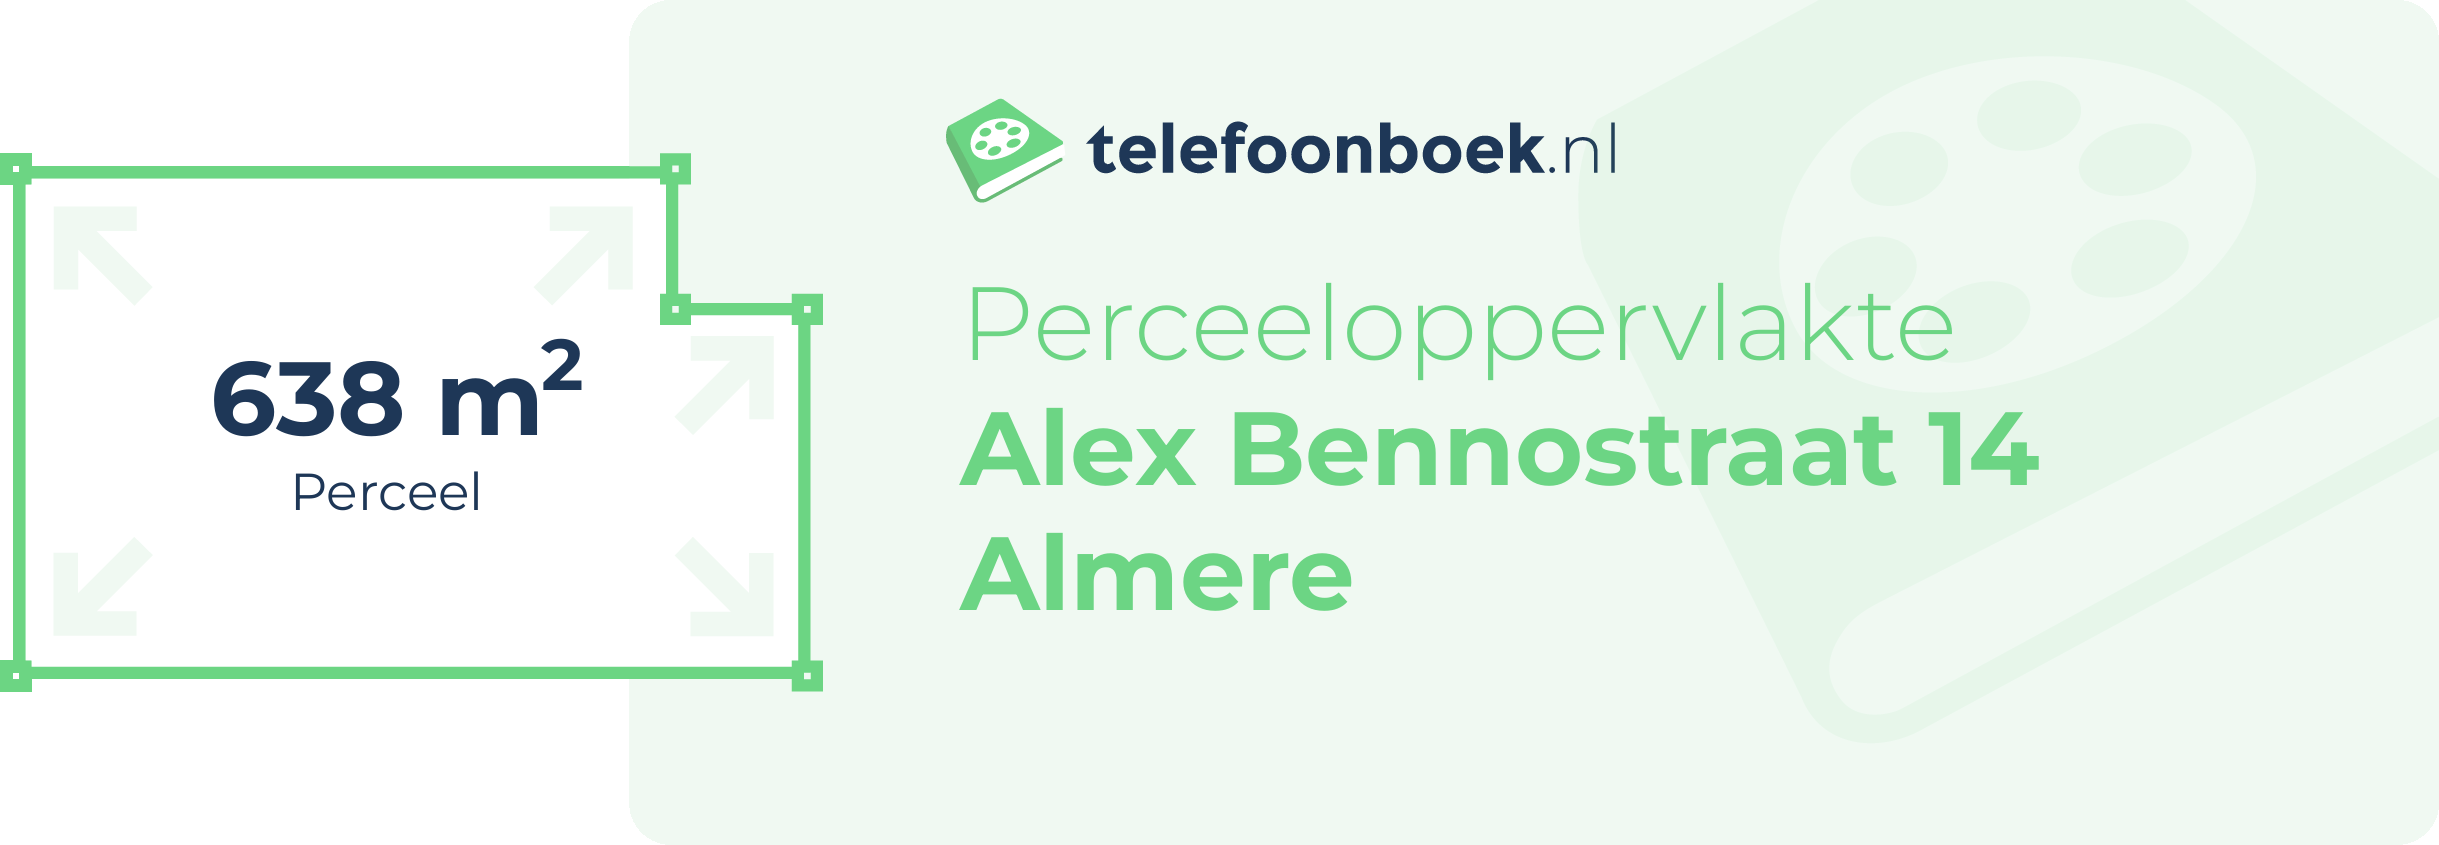 Perceeloppervlakte Alex Bennostraat 14 Almere